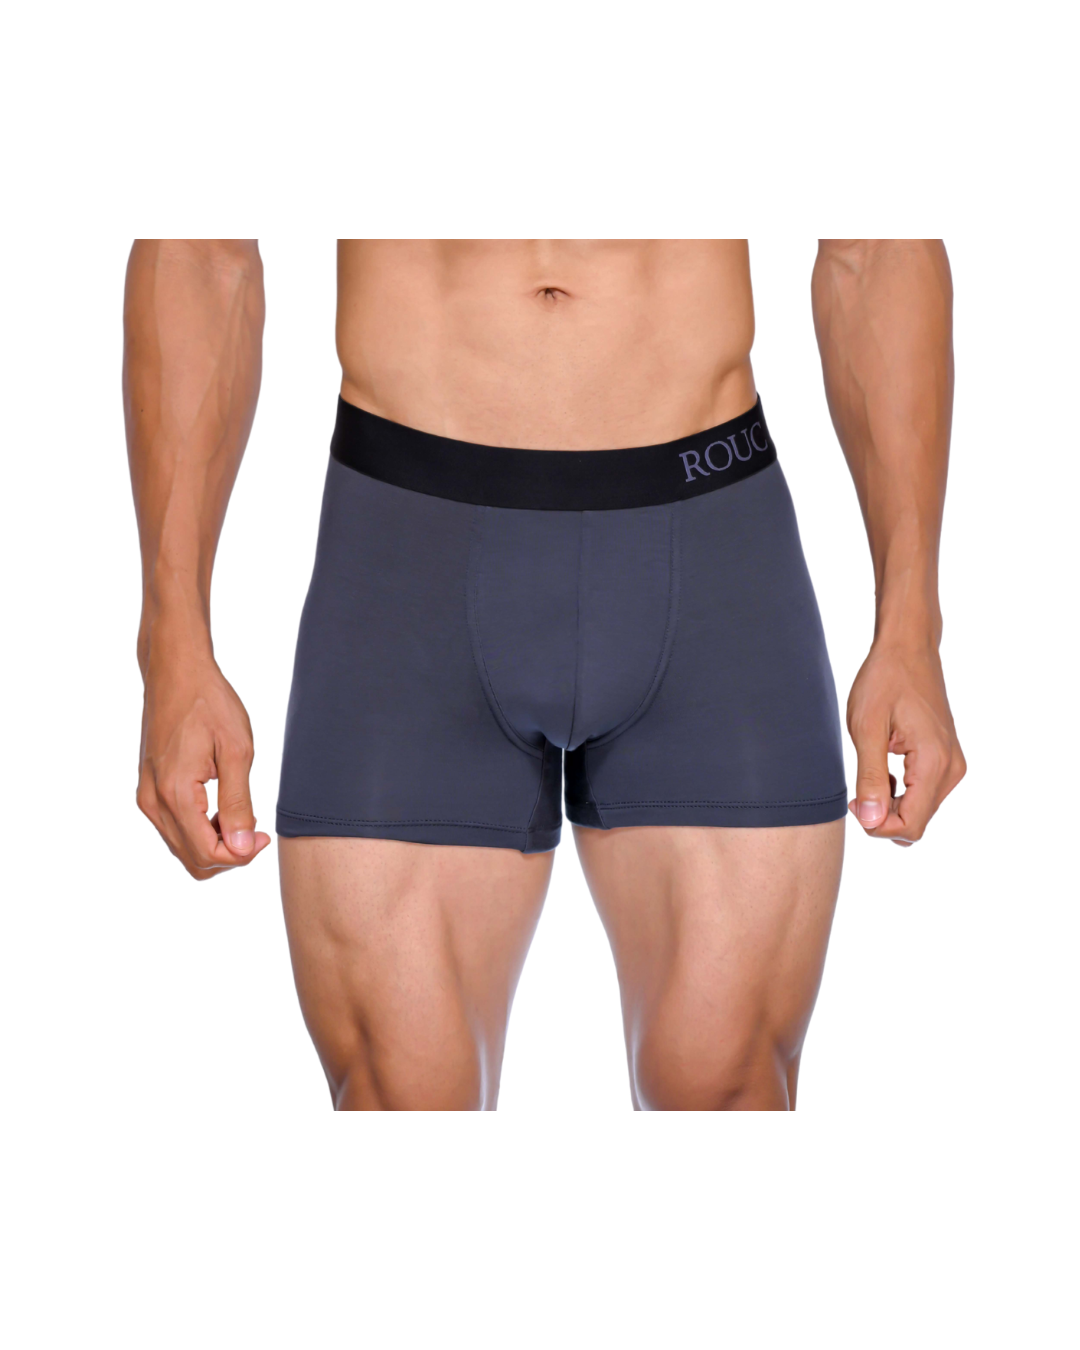 Modal Trunk Premium Underwear, Type: Trunks at Rs 225/piece in Surat